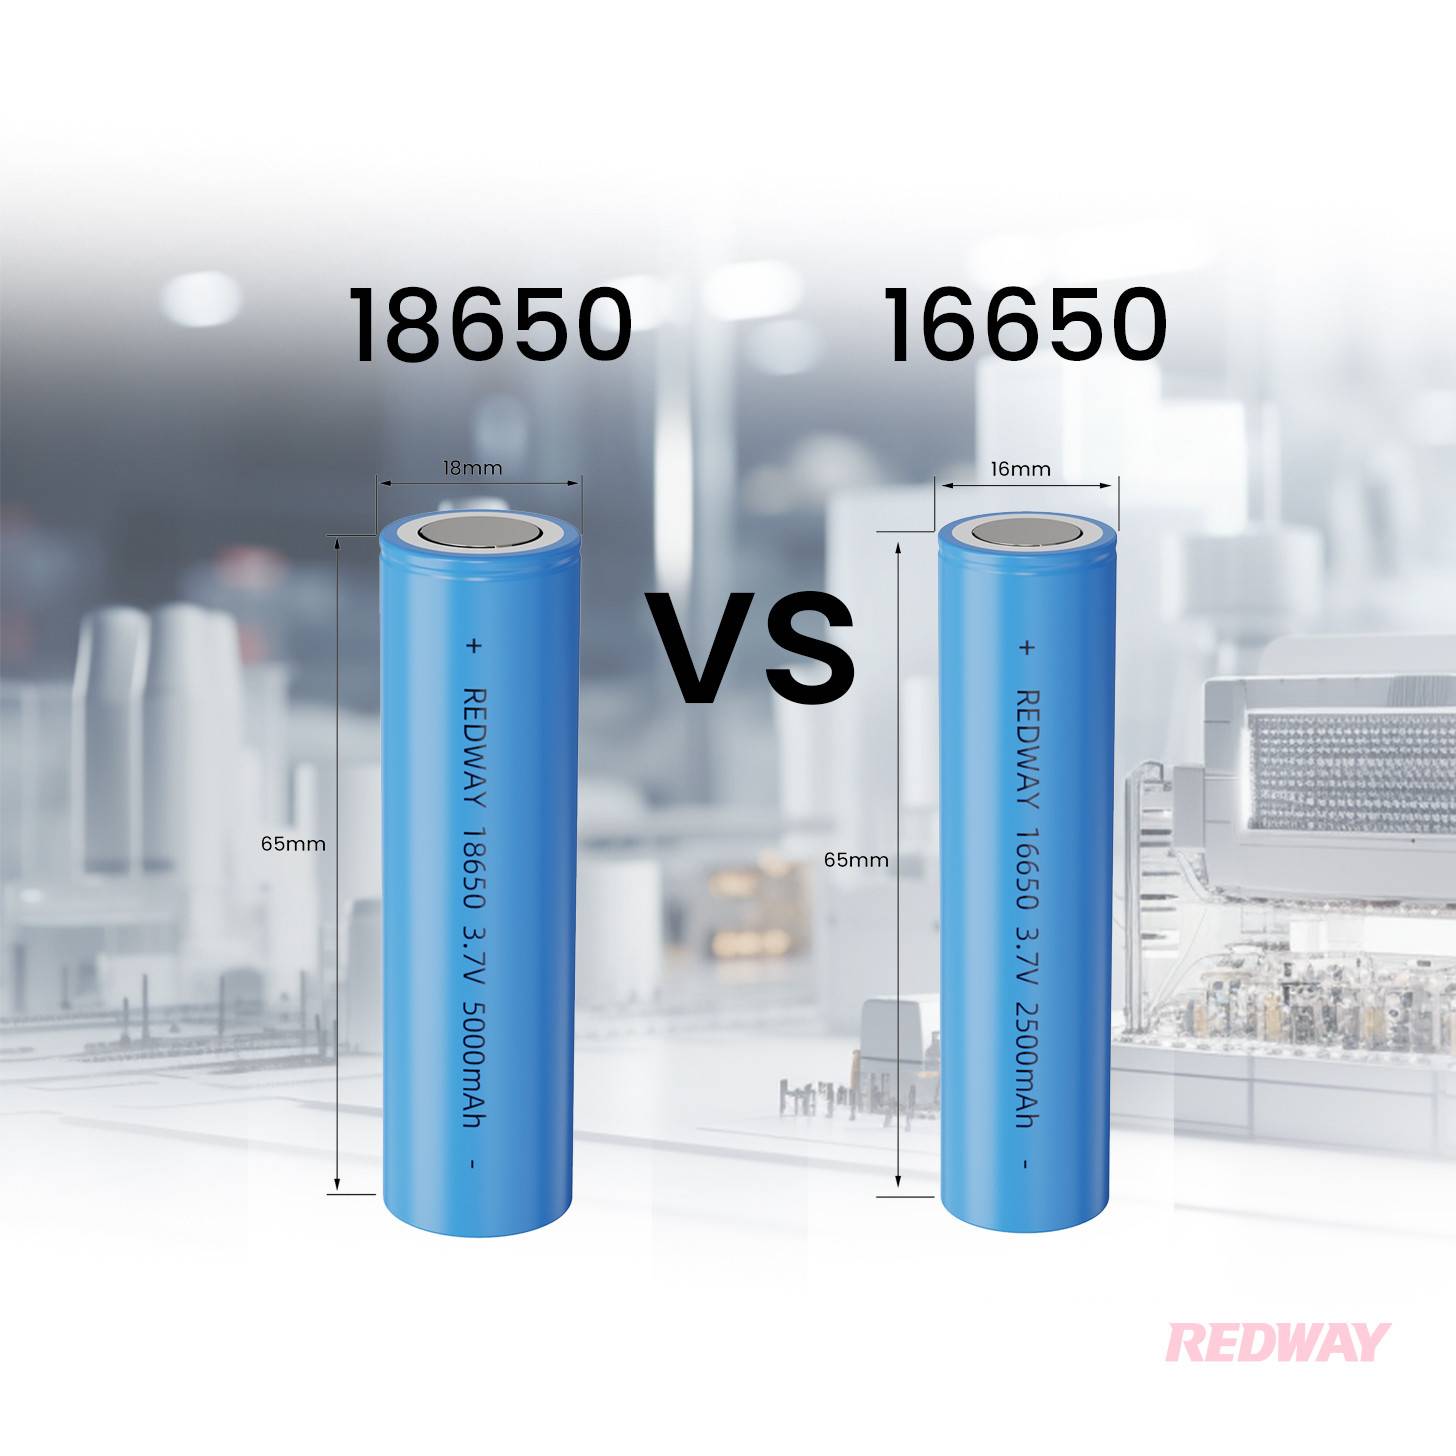 18650 vs 16650 Battery